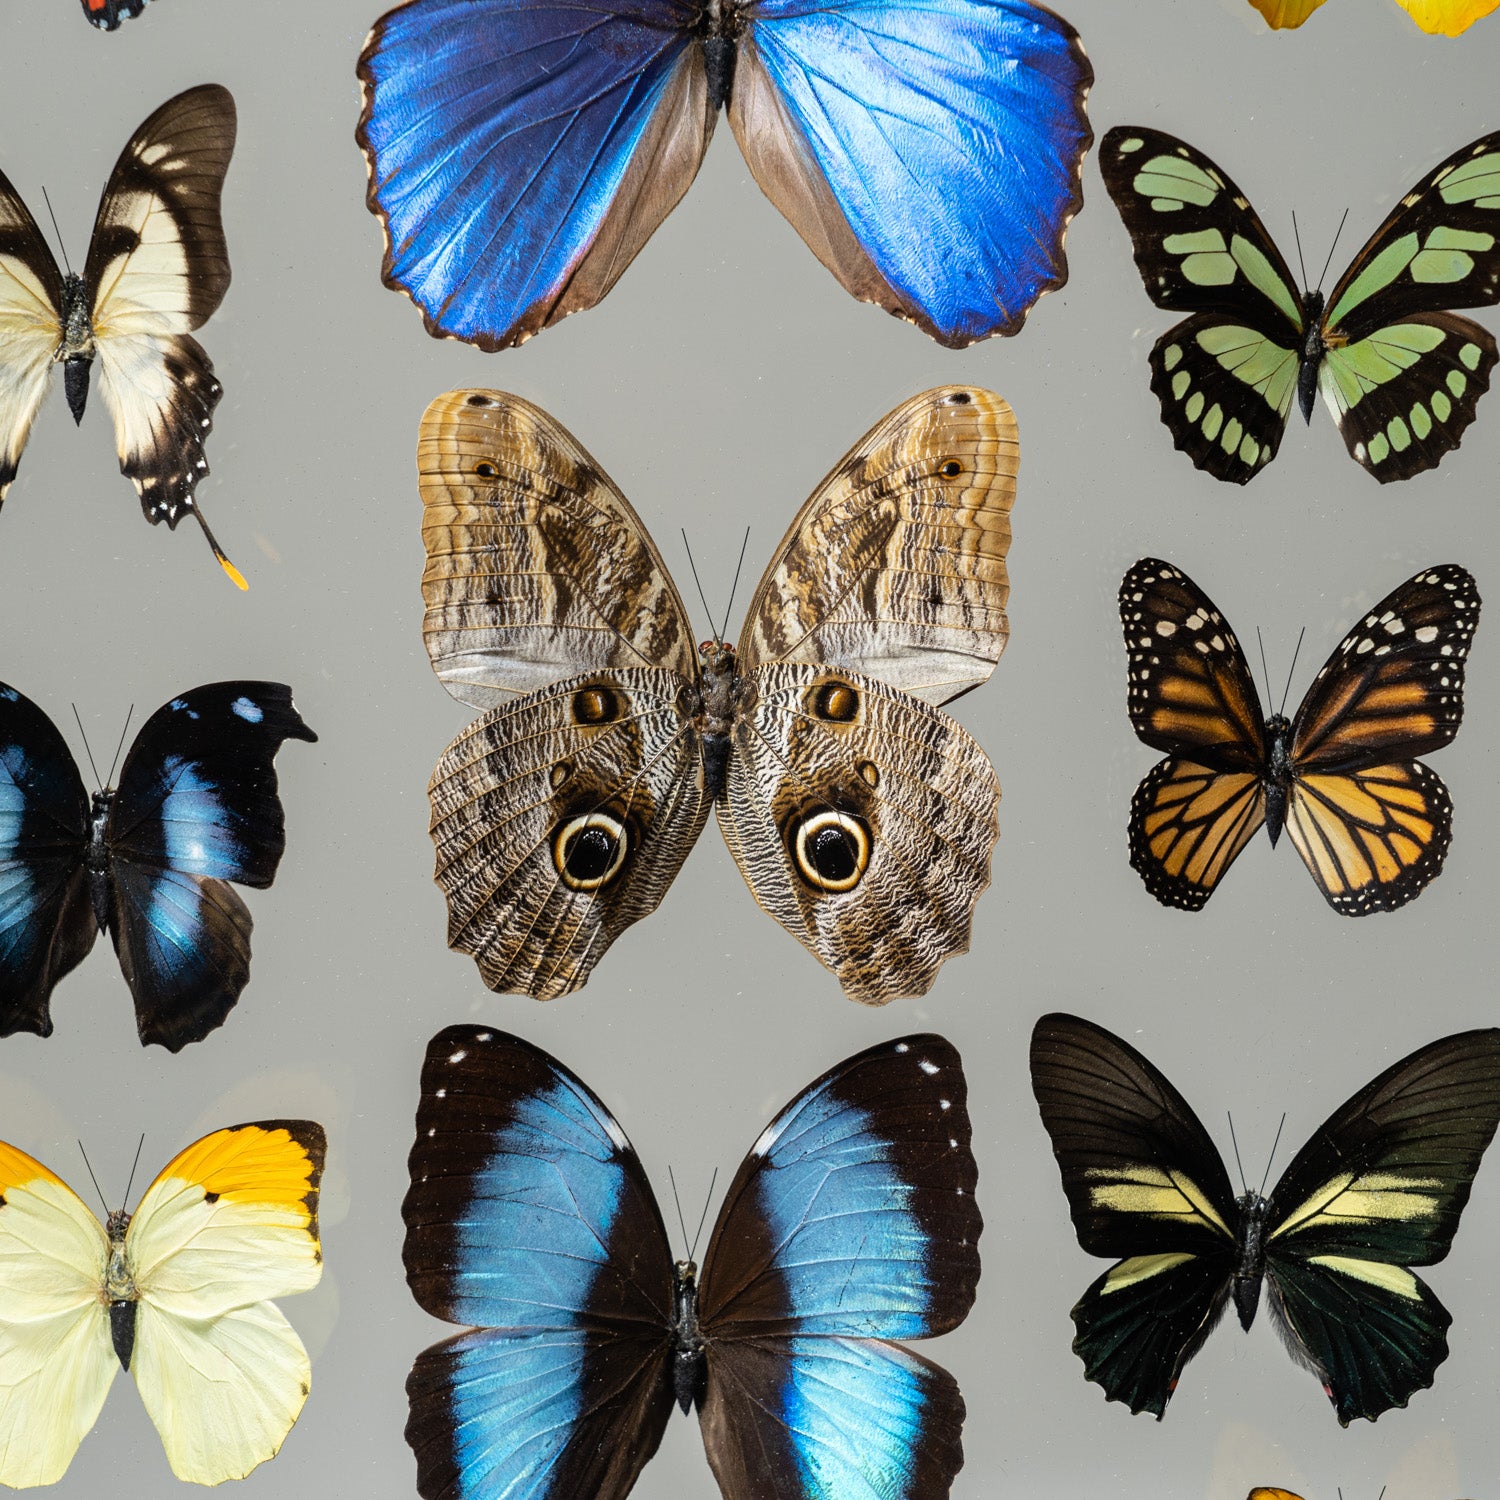 22 Genuine Butterflies in Black Display Frame